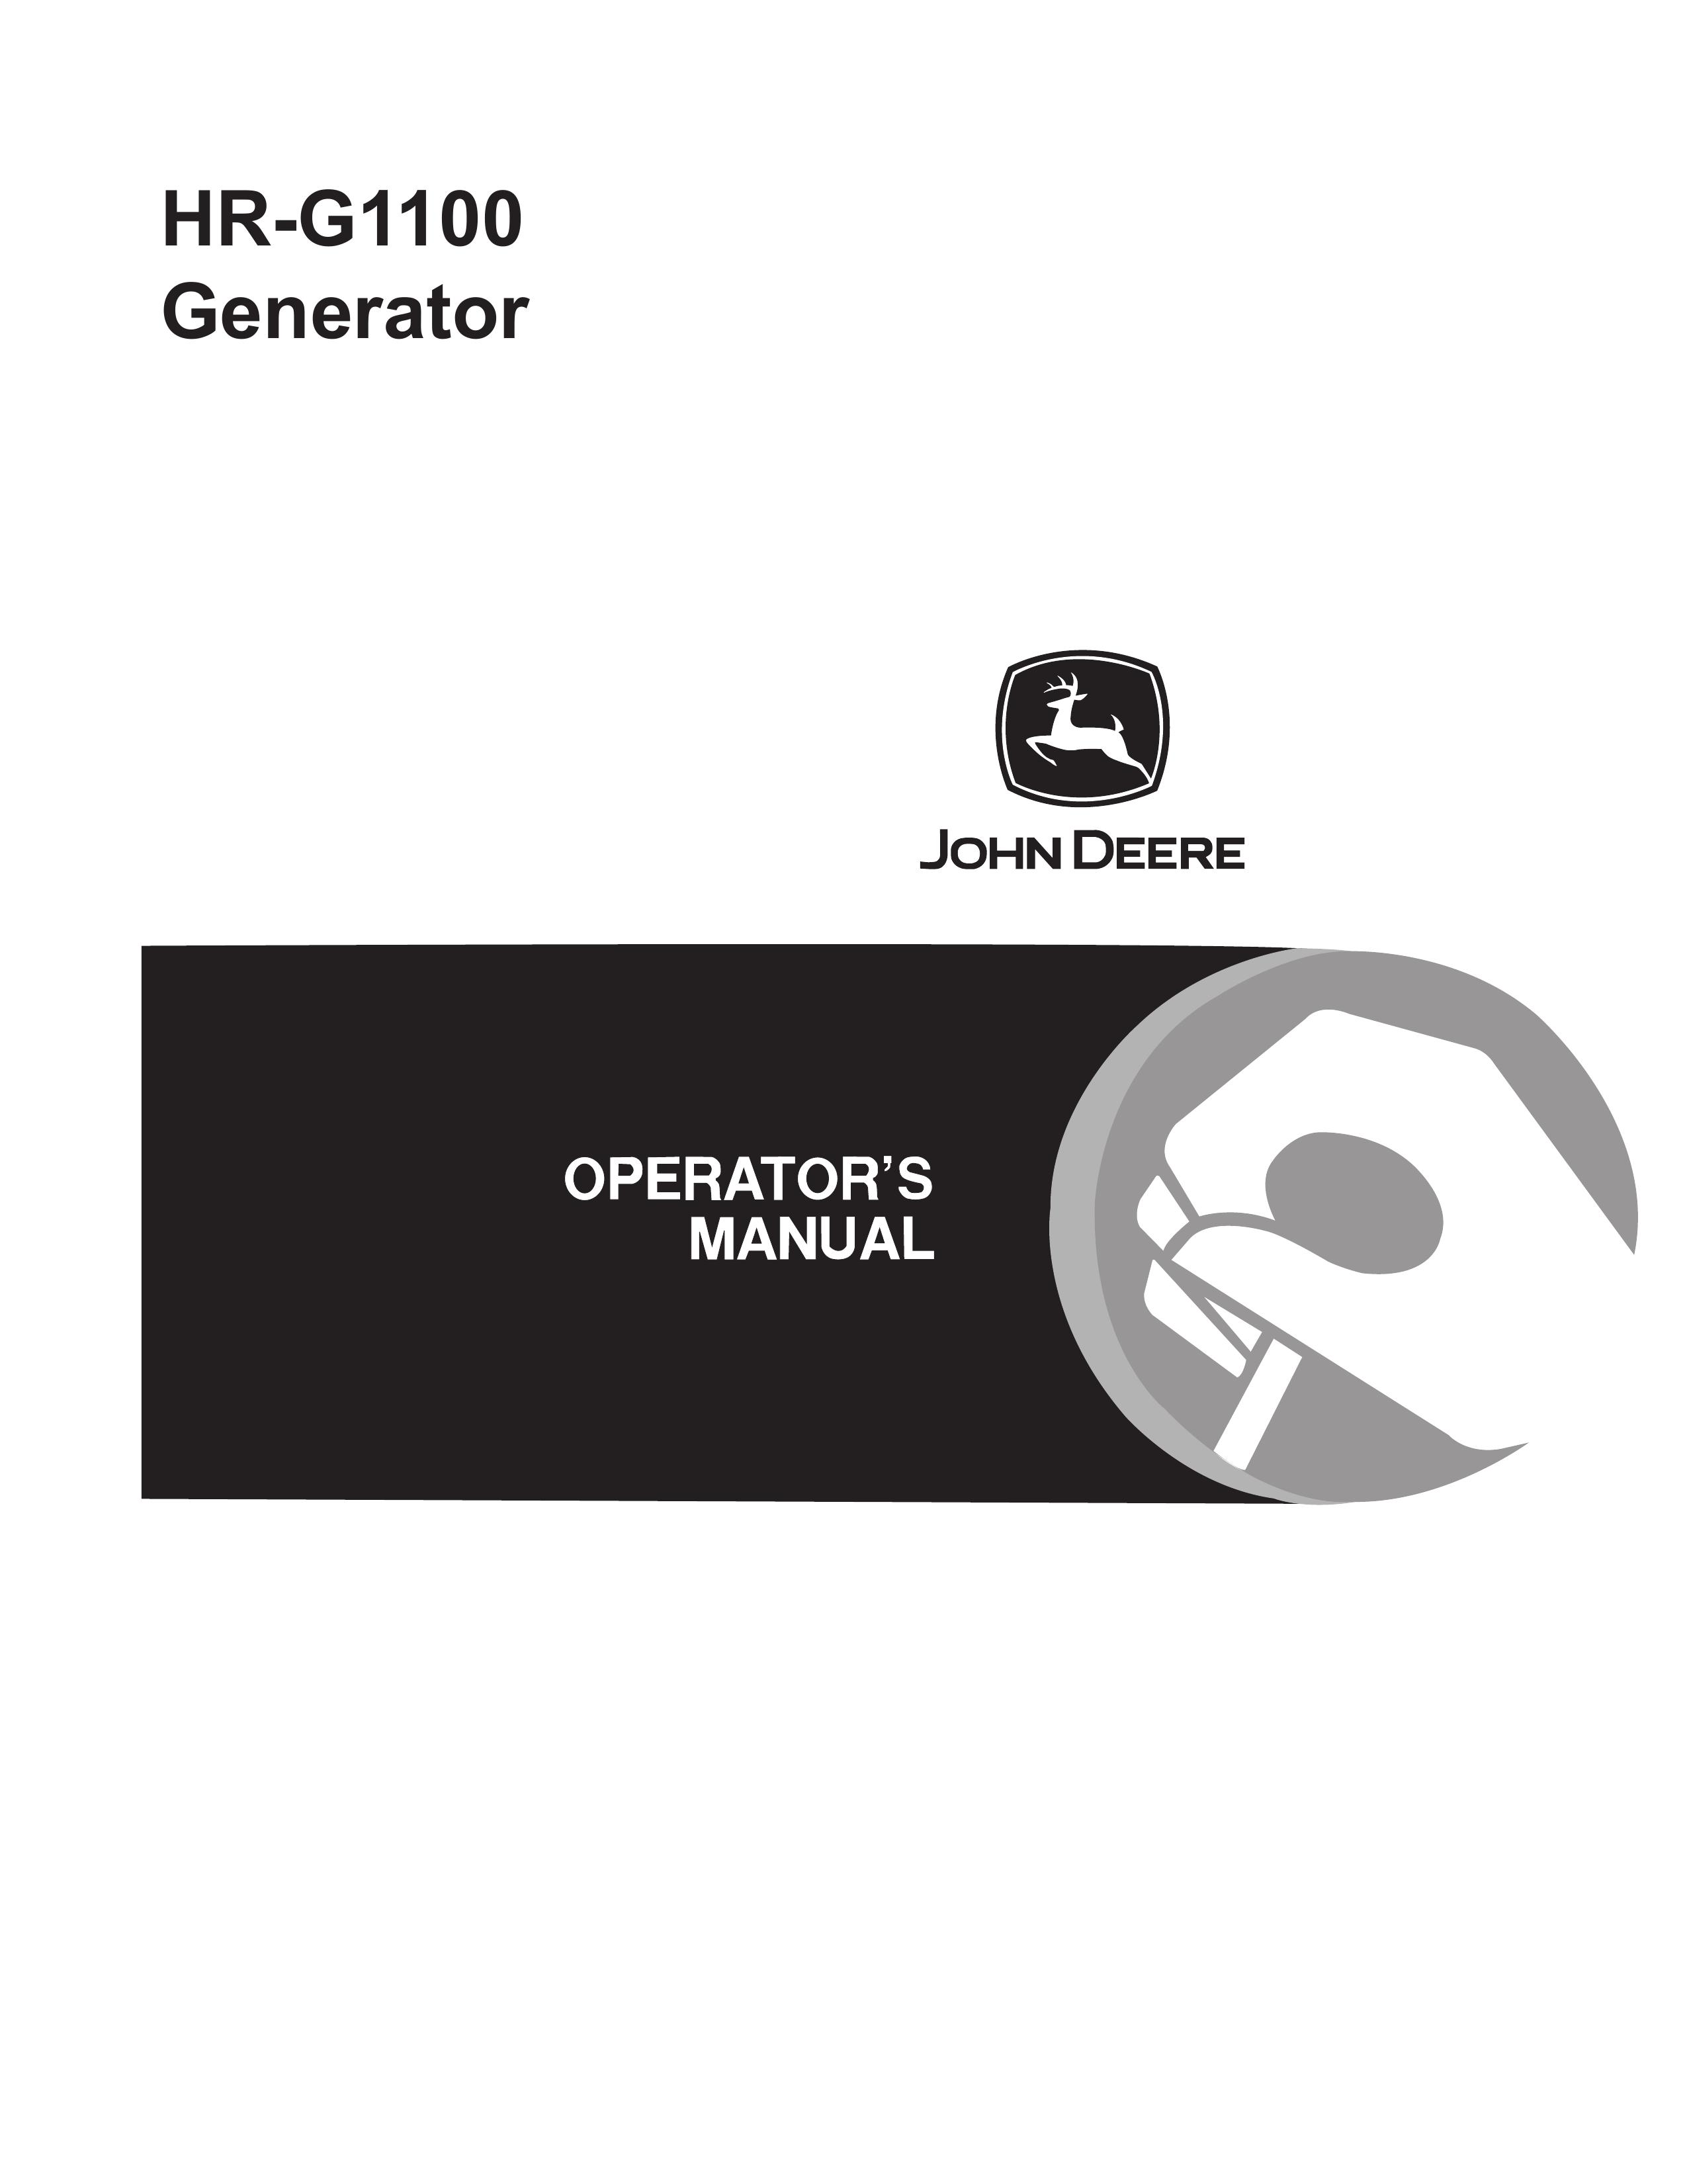 John Deere HR-G1100 Portable Generator User Manual